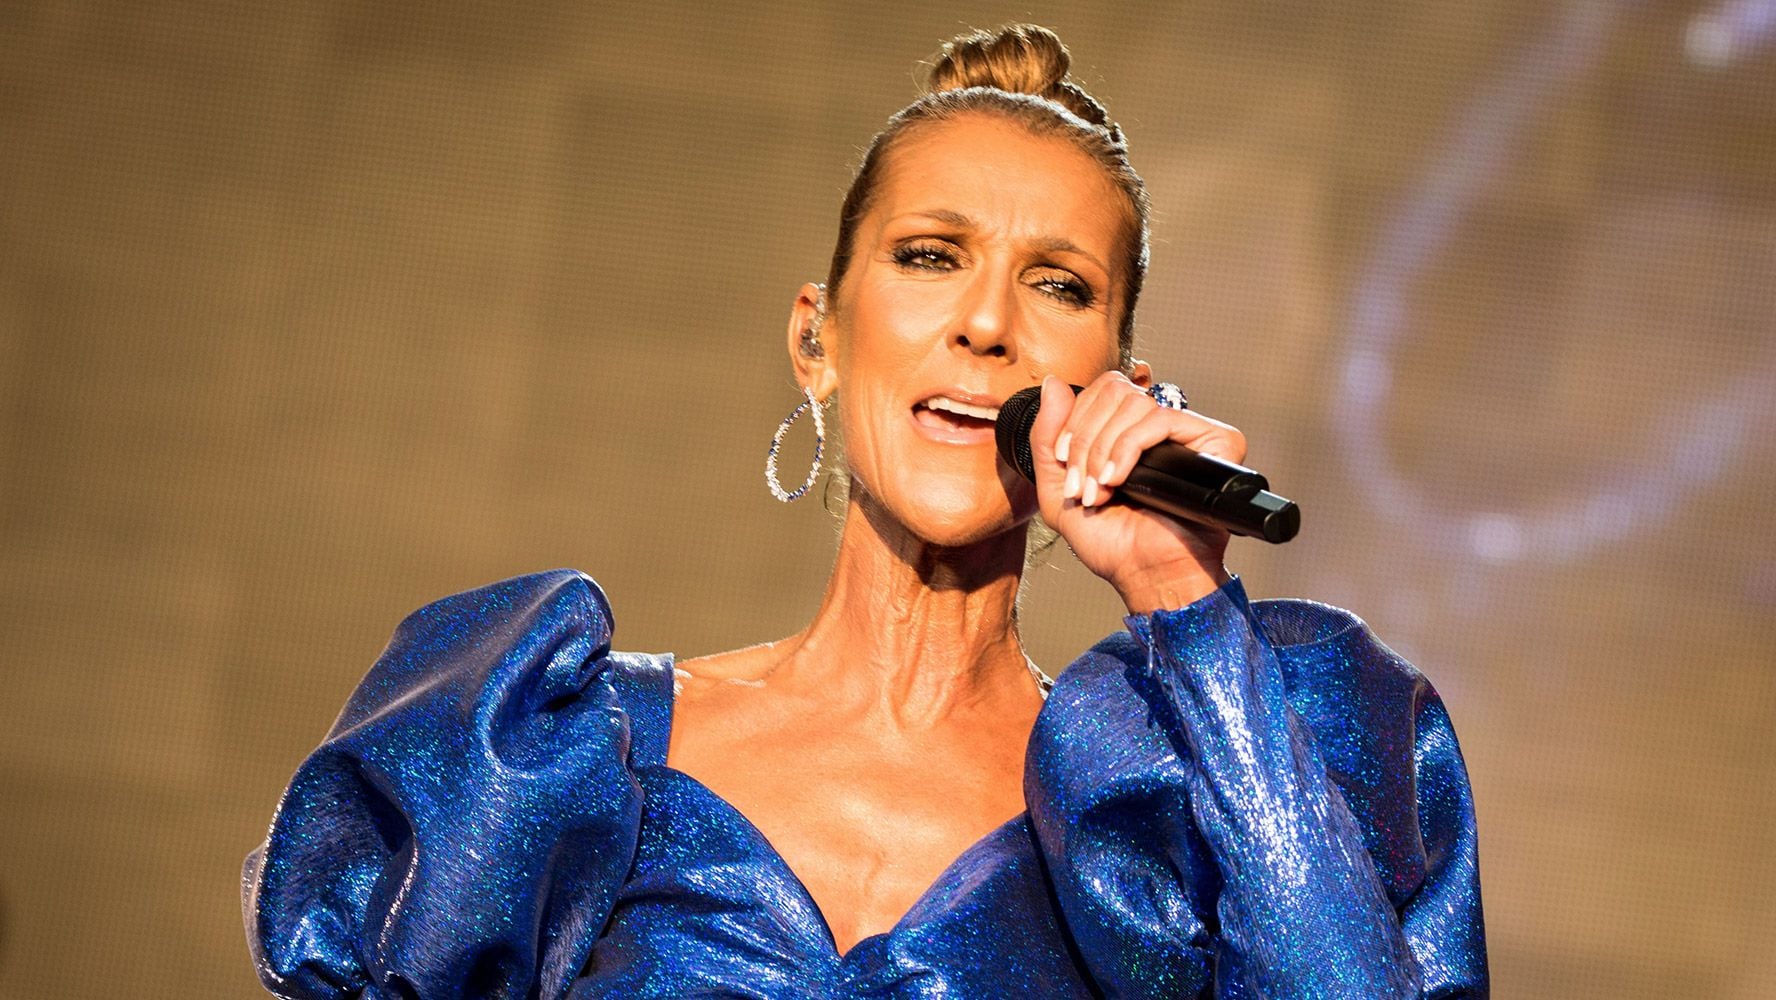 La cantante Céline Dion toma terapias en su intento de volver a los escenarios. (Foto: Shutterstock)